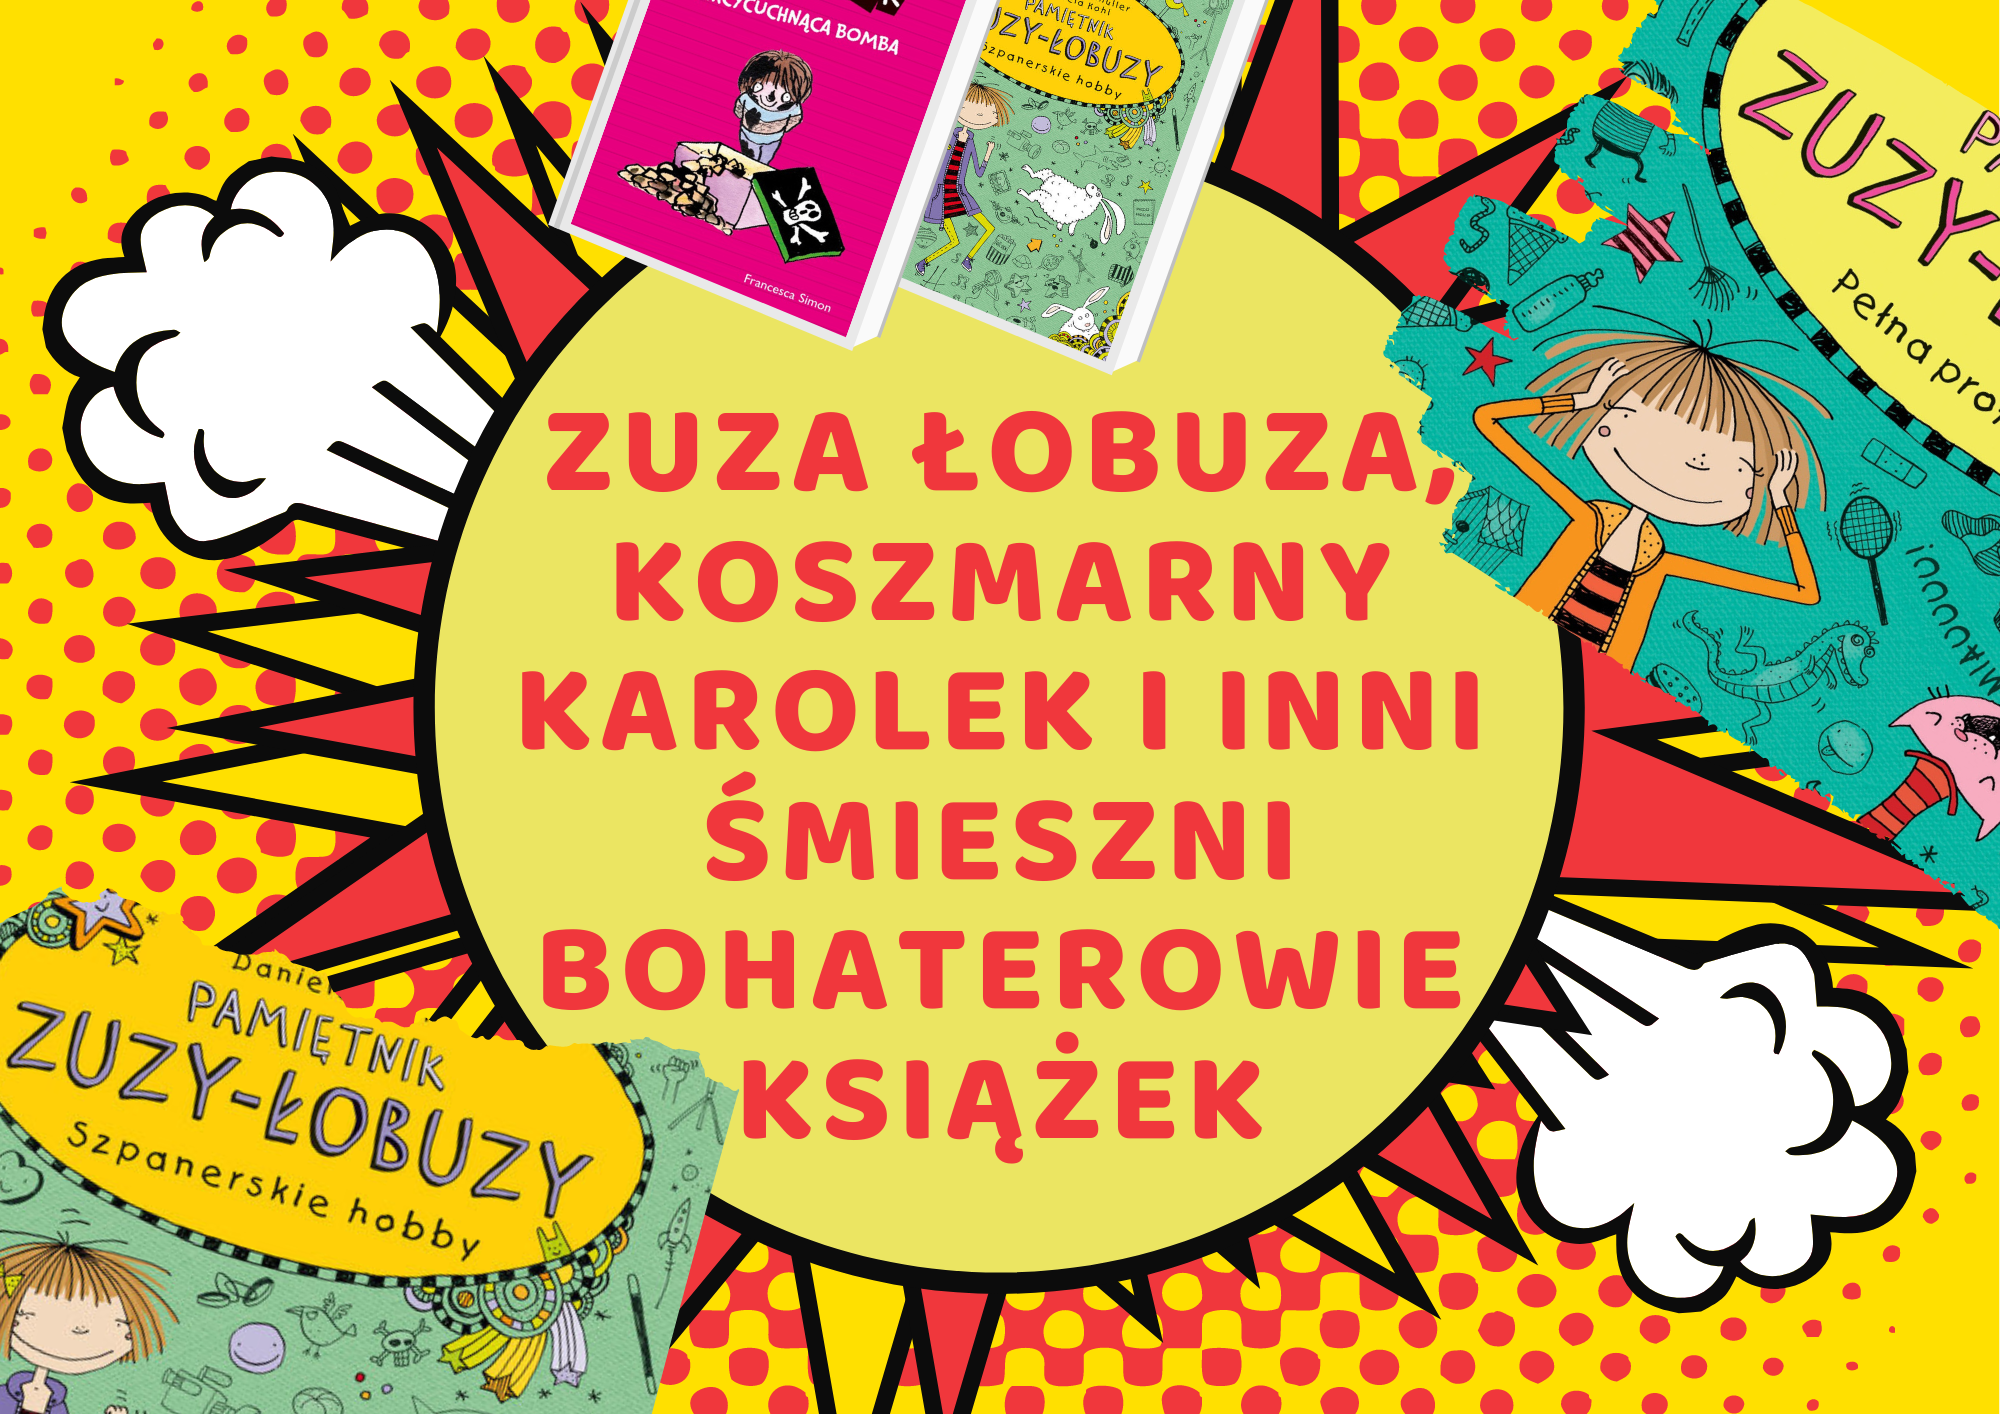 Zuza Łobuza Koszmarny Karolek i inni śmieszni bohaterowie książek